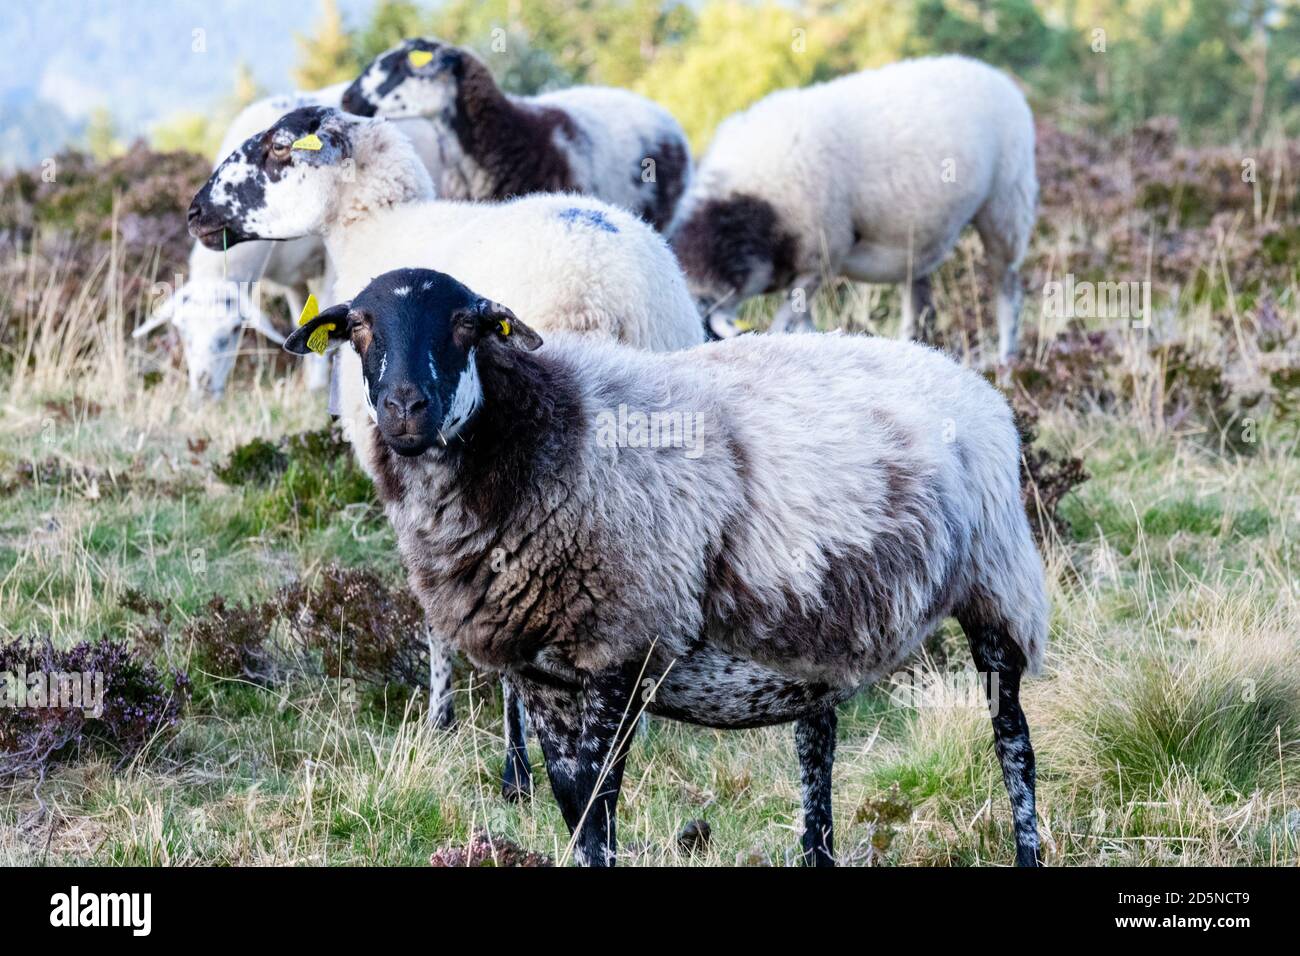 élevage de moutons dans un pâturage de montagne Banque D'Images